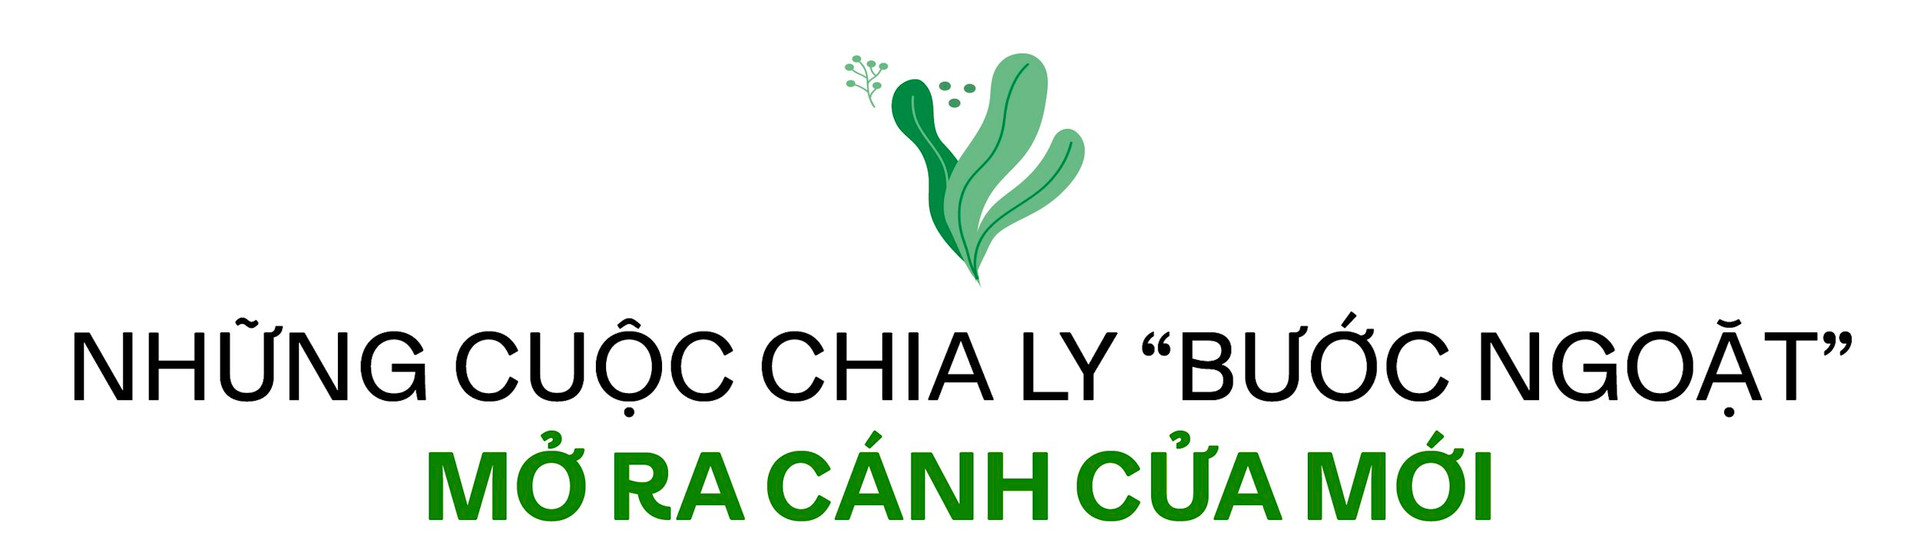 Từ kho nhỏ bán cây đến thương hiệu cà phê xanh có tiếng tại Hà Nội, CEO 8x kể chuyện chinh phục phân khúc cao cấp ở “ngách” mới, “tiền không phải vấn đề” với khách hàng - Ảnh 6.